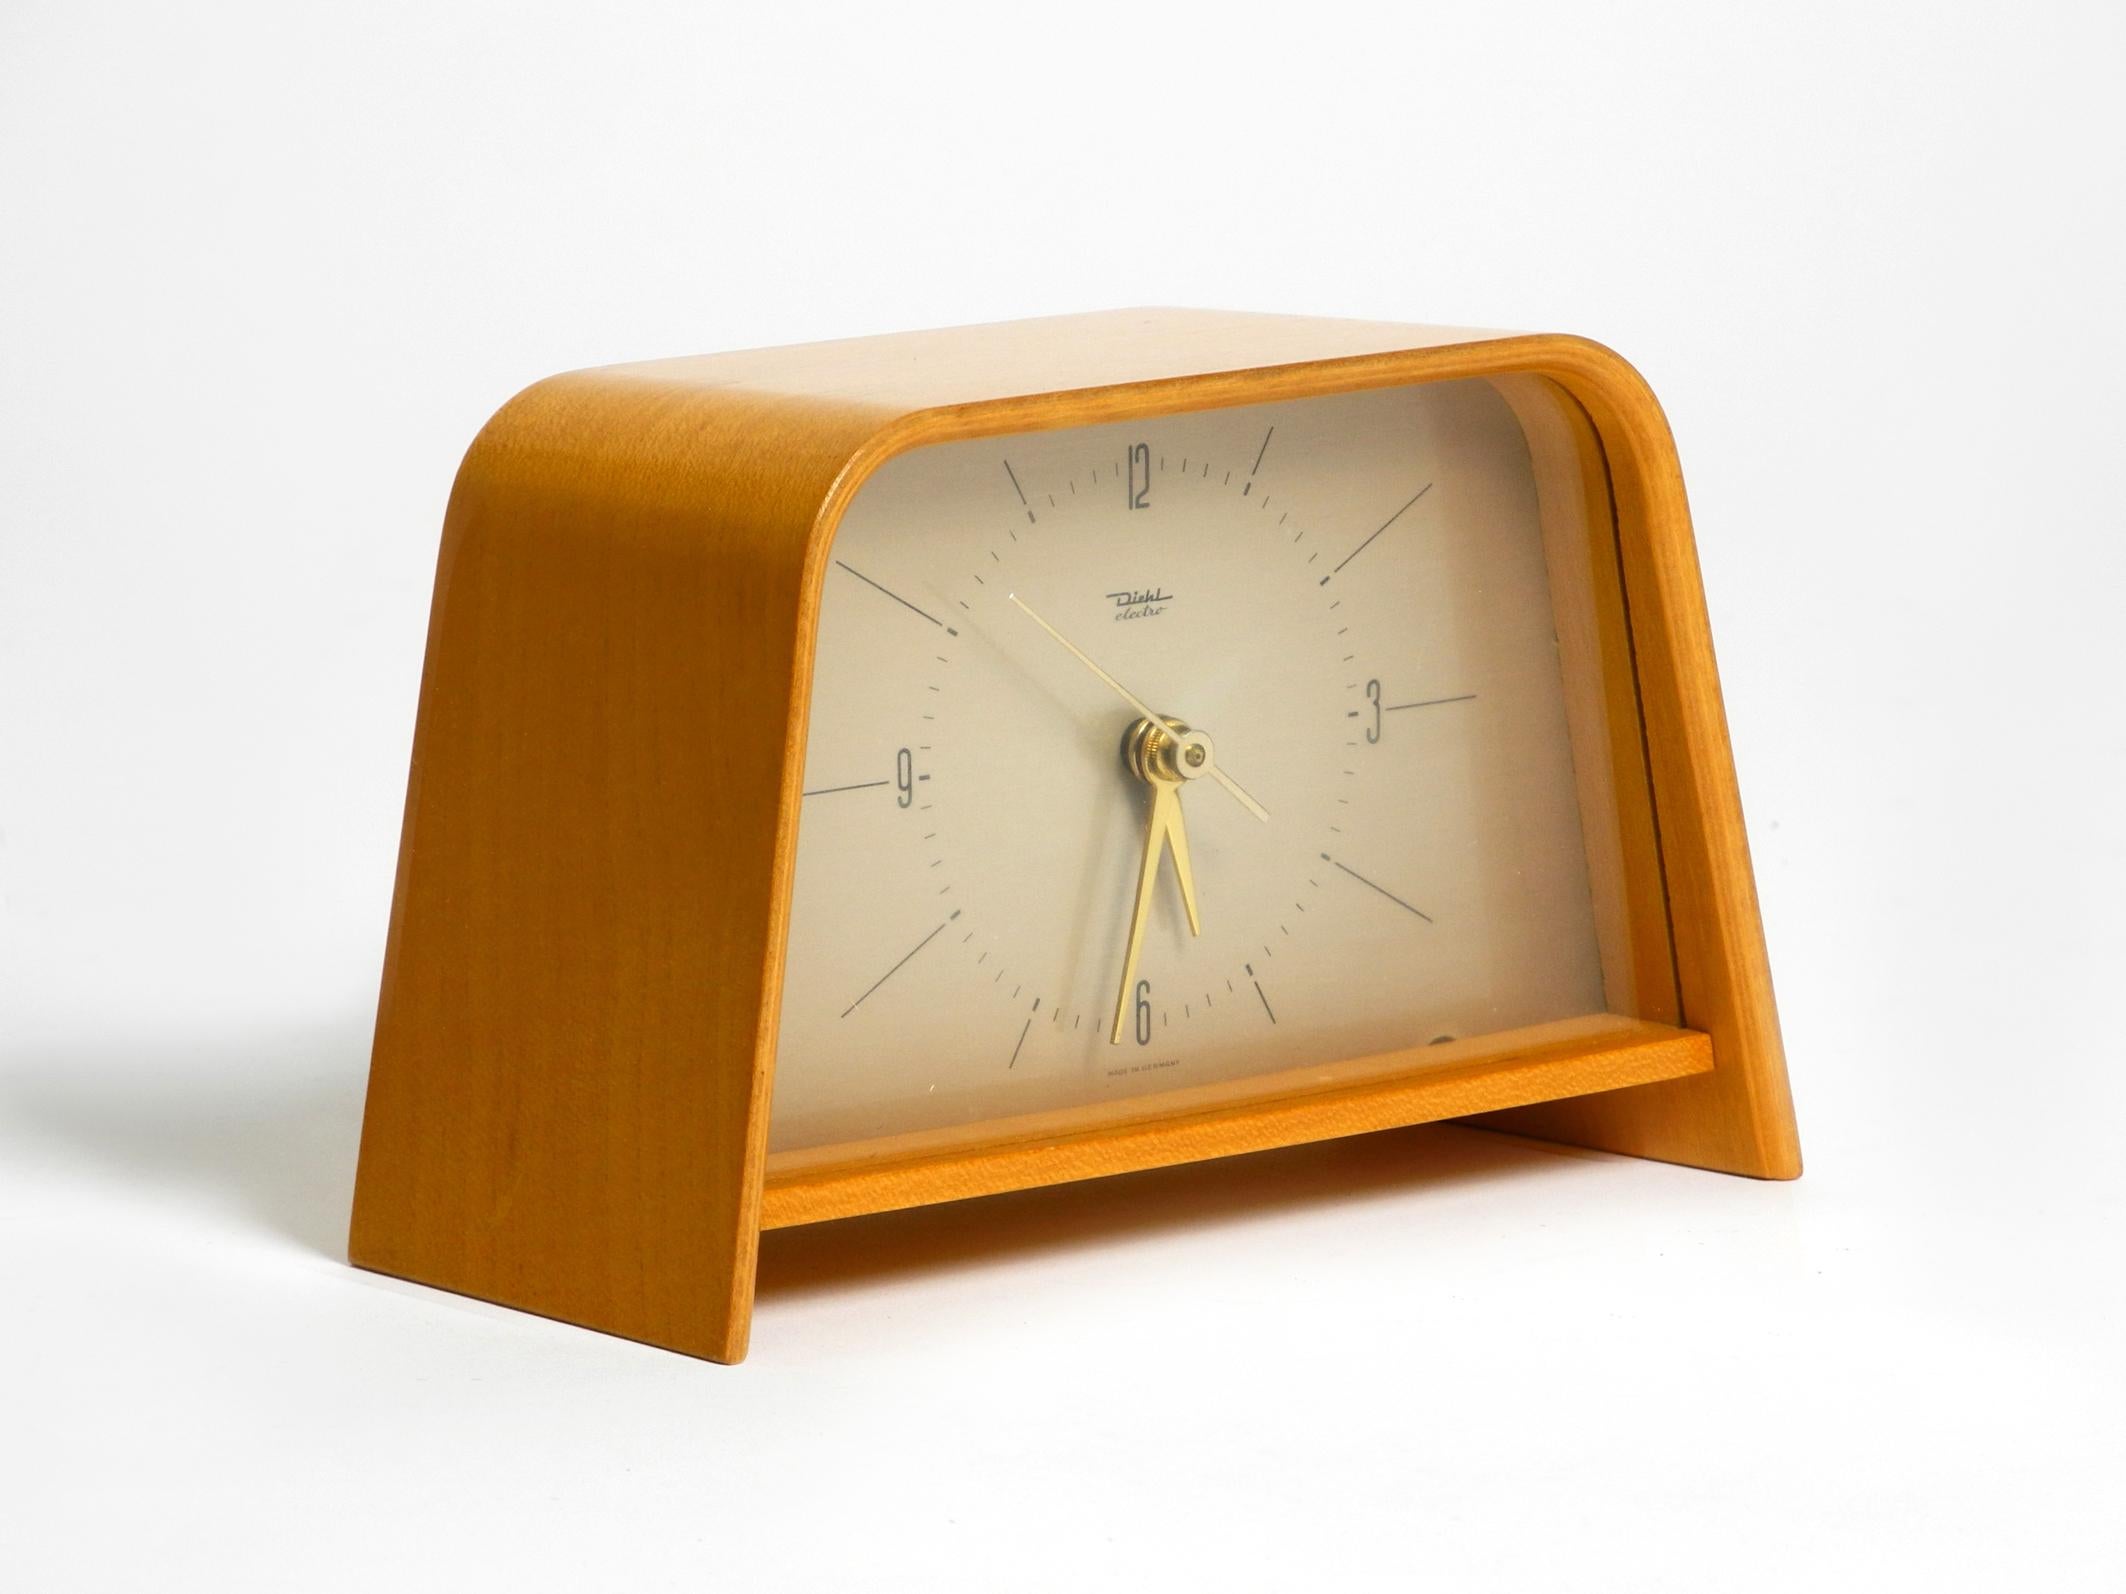 Magnifique et très rare horloge de table Diehl des années 1950, avec boîtier incurvé en contreplaqué de teck. Très bon état vintage. Pratiquement aucune trace d'utilisation n'est visible. Fabriqué en Allemagne.
Fonctionne sur piles avec mouvement